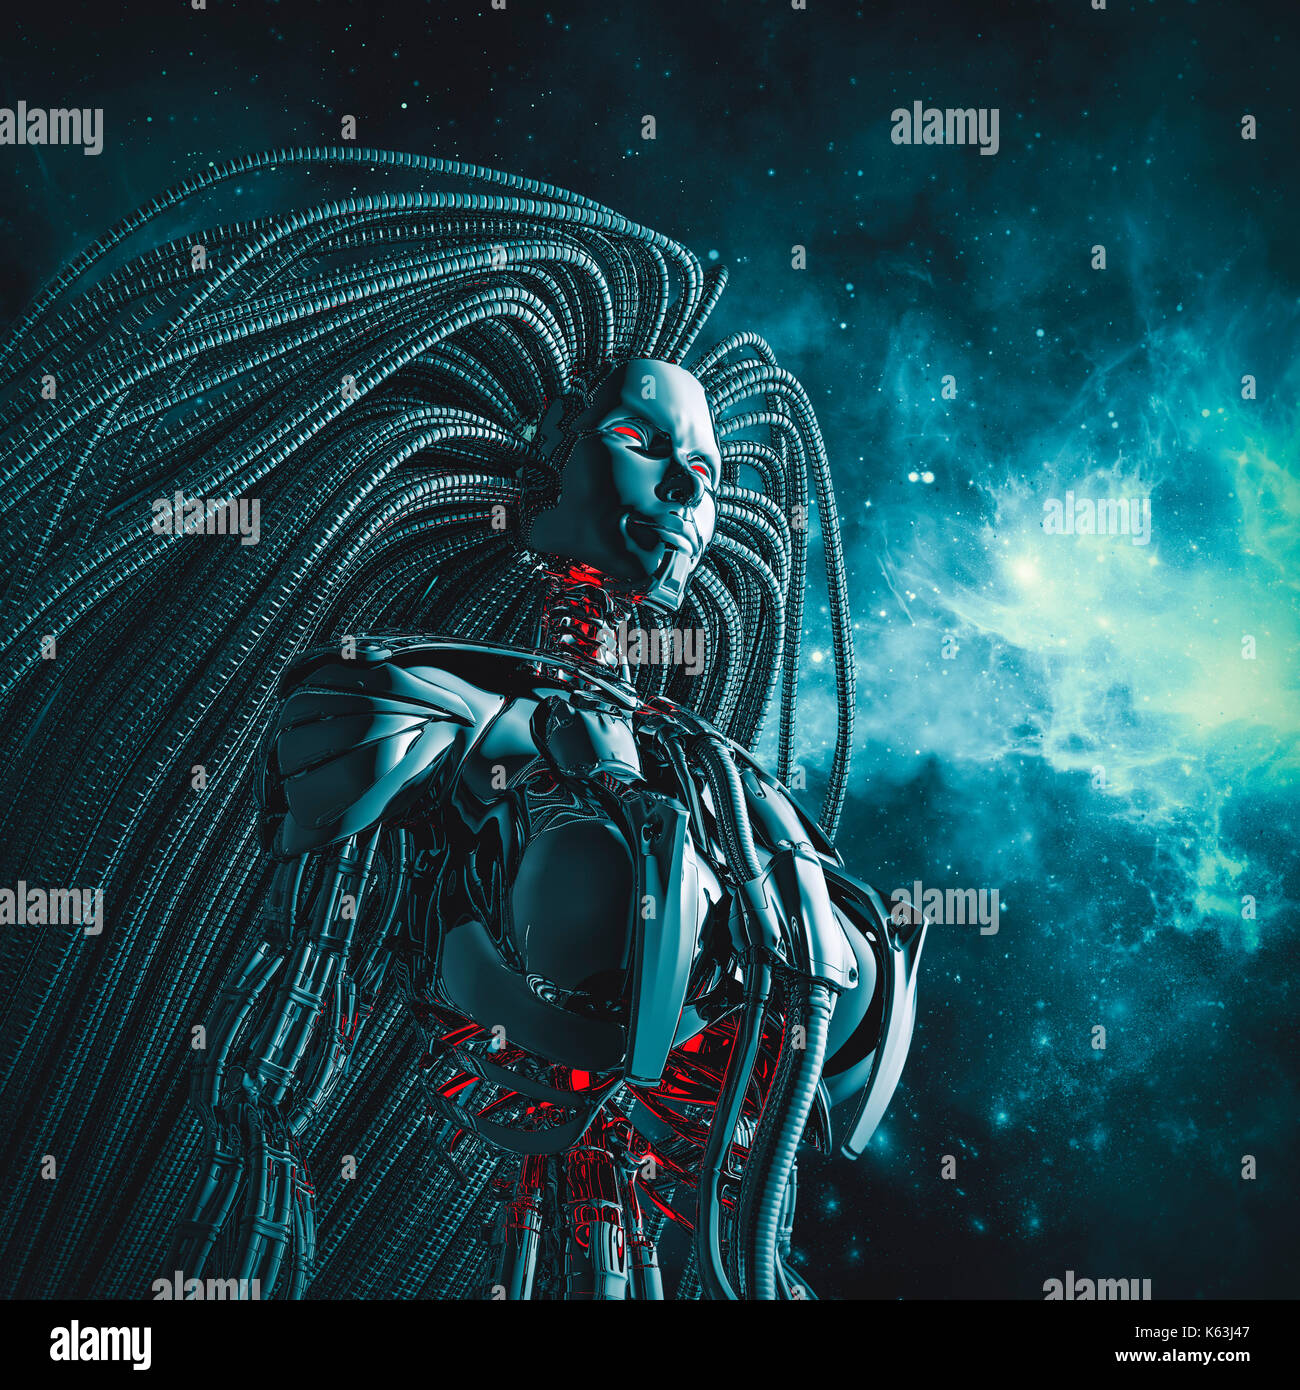 Femmina spazio cyborg / 3d illustrazione di metallico androide femminile con flusso di capelli tentacled guardando nello spazio Foto Stock